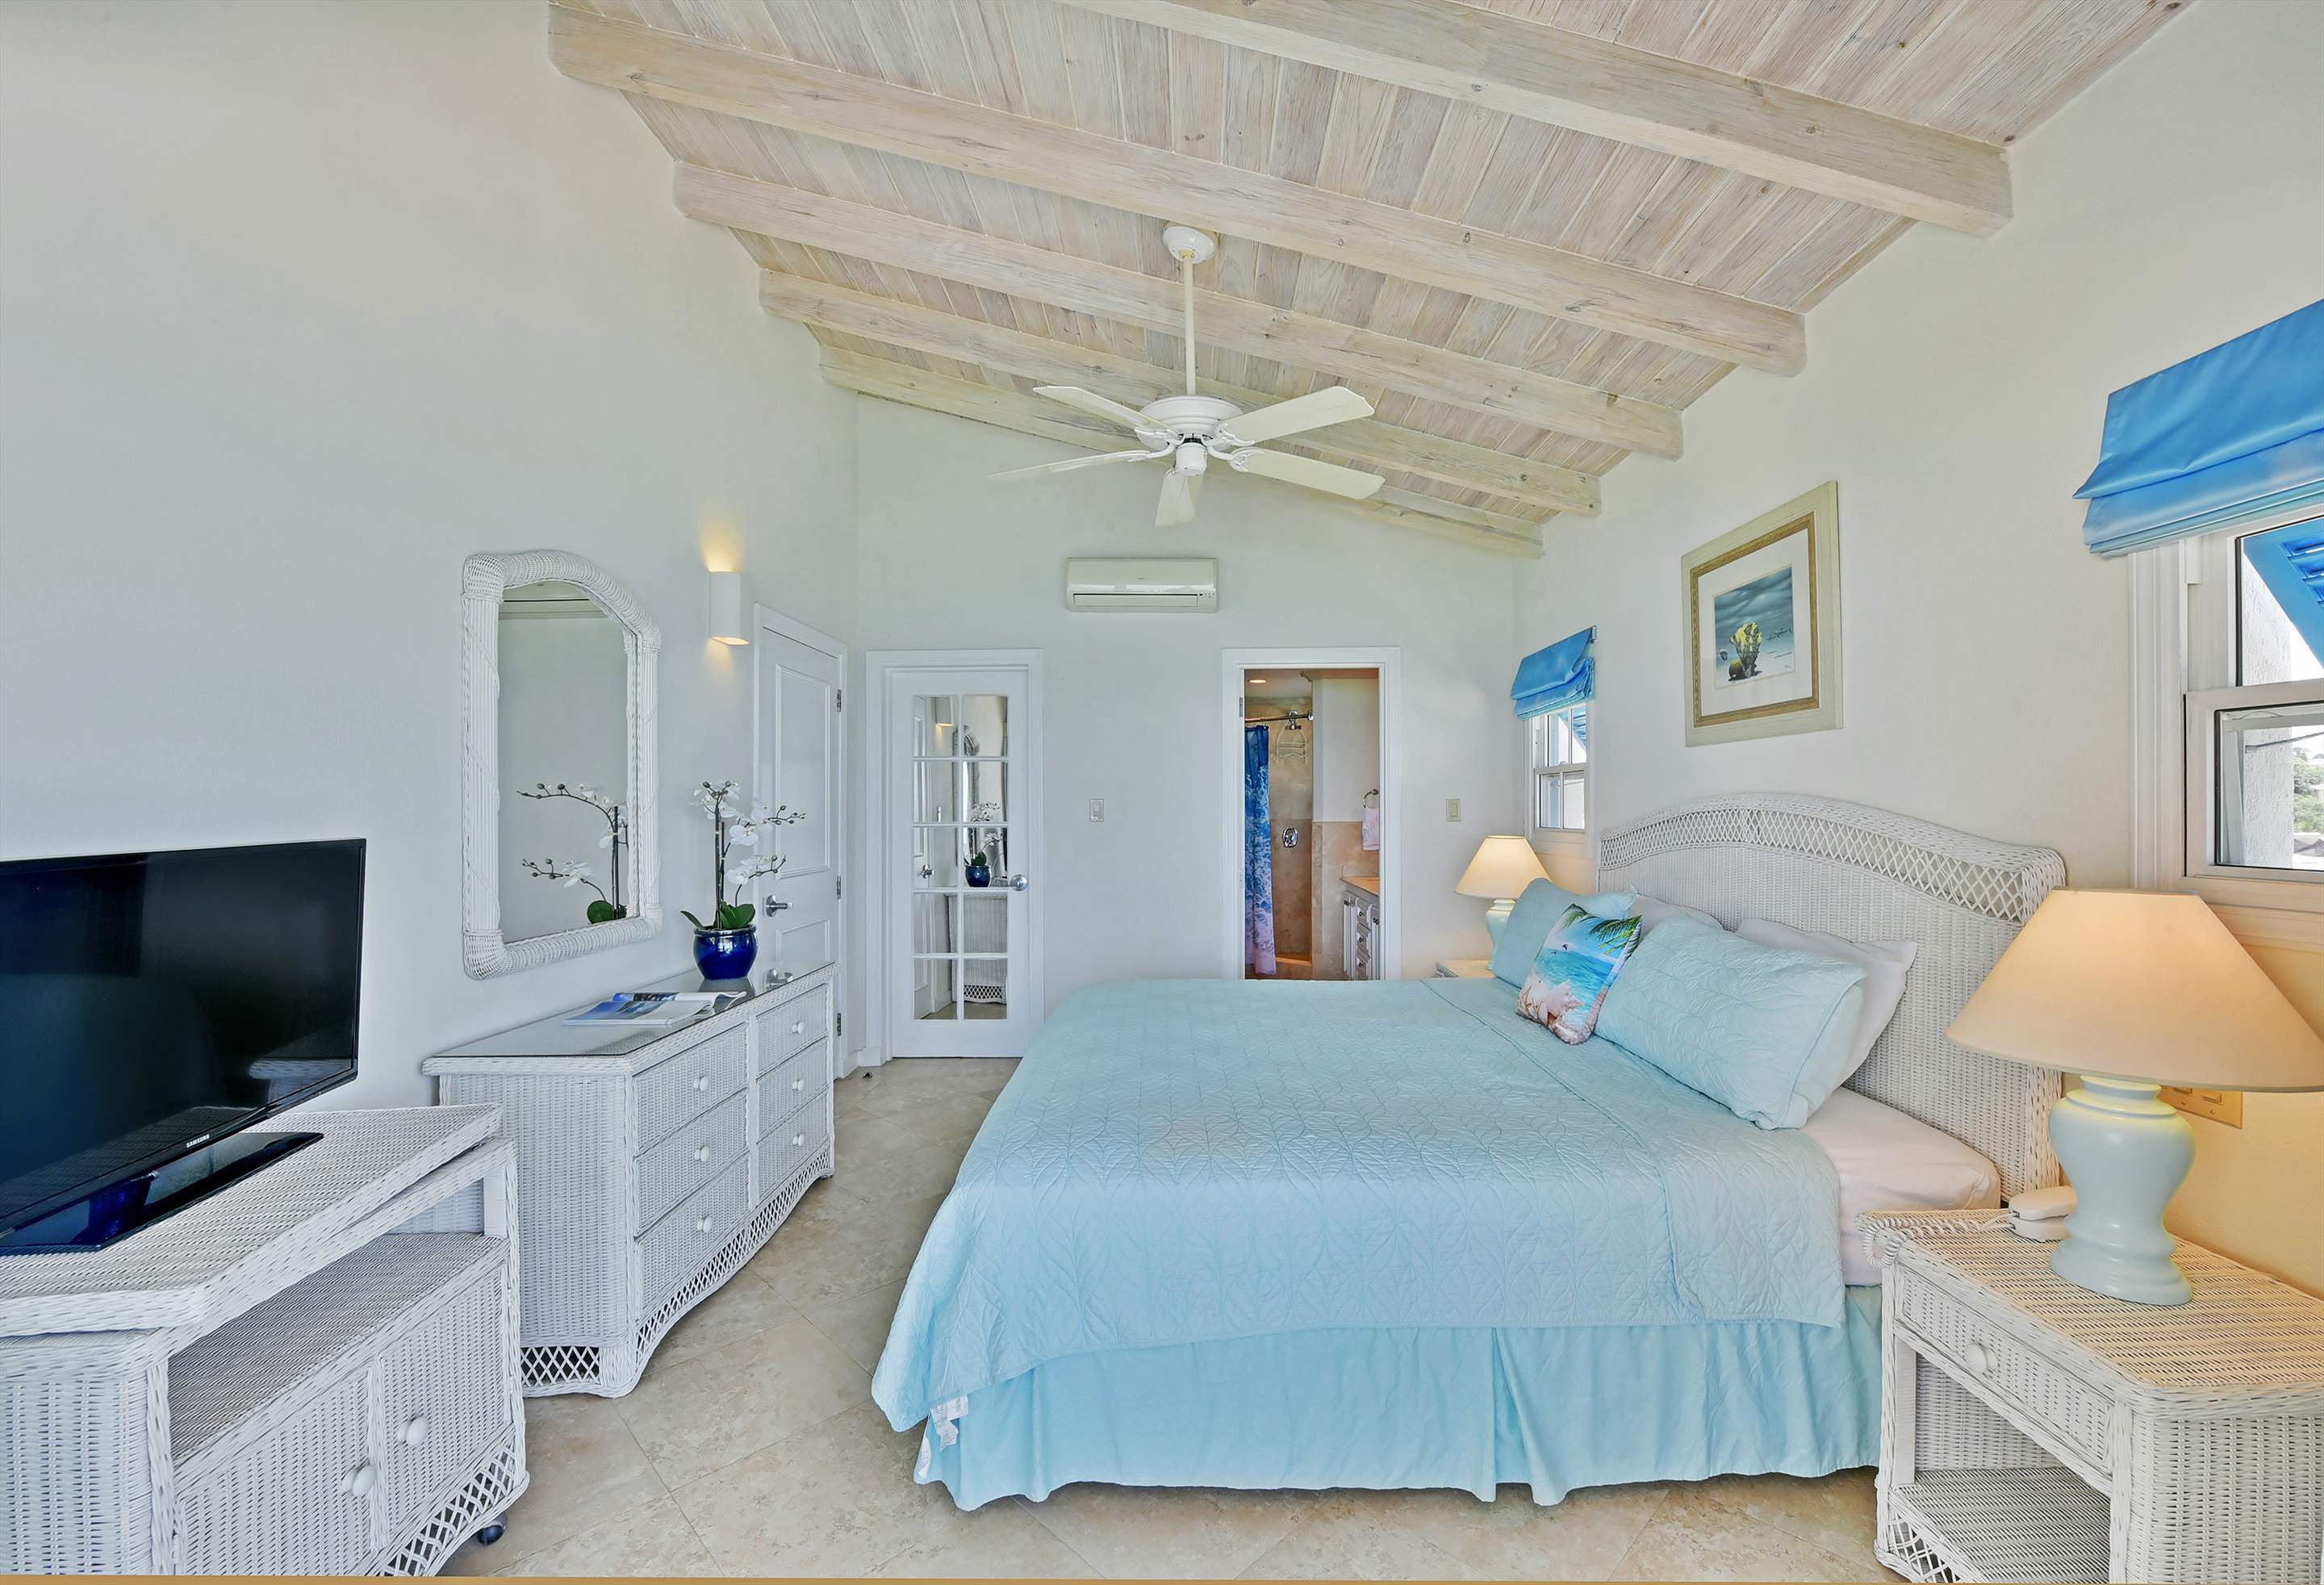 Maxwell Beach Villas 503, 2 bedroom, 2 bedroom villa in St. Lawrence Gap & South Coast, Barbados Photo #15